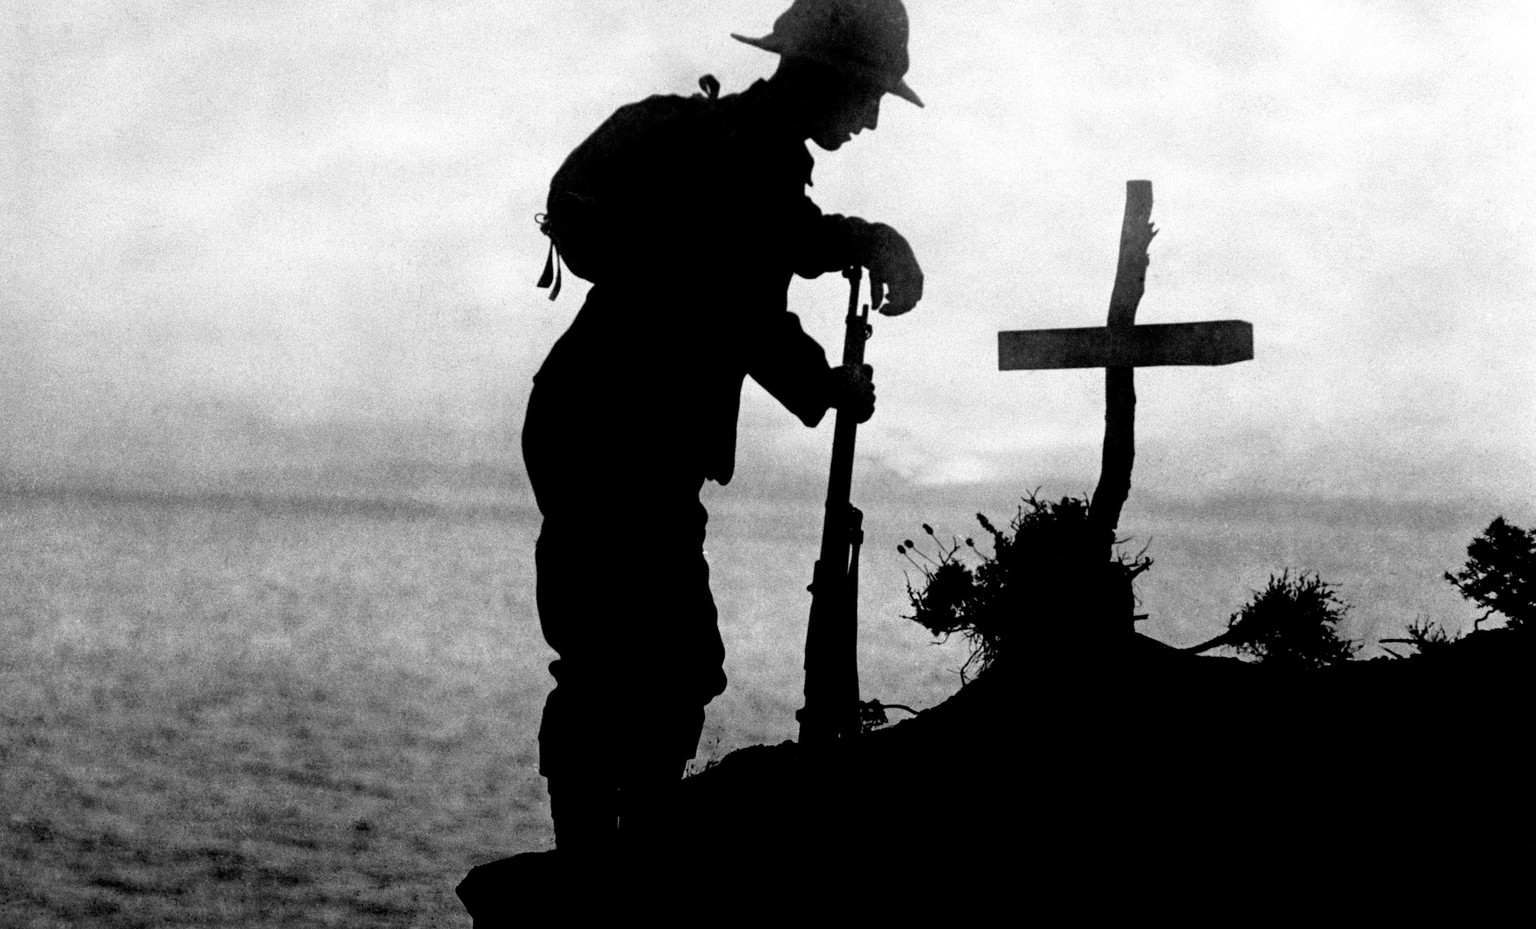 Ein britischer Soldat am Grab seines Kameraden in der Nähe vom Kap Helles, wo die Landung der britischen und französischen Truppen auf der türkischen Halbinsel Gallipoli erfolgte, 1915.